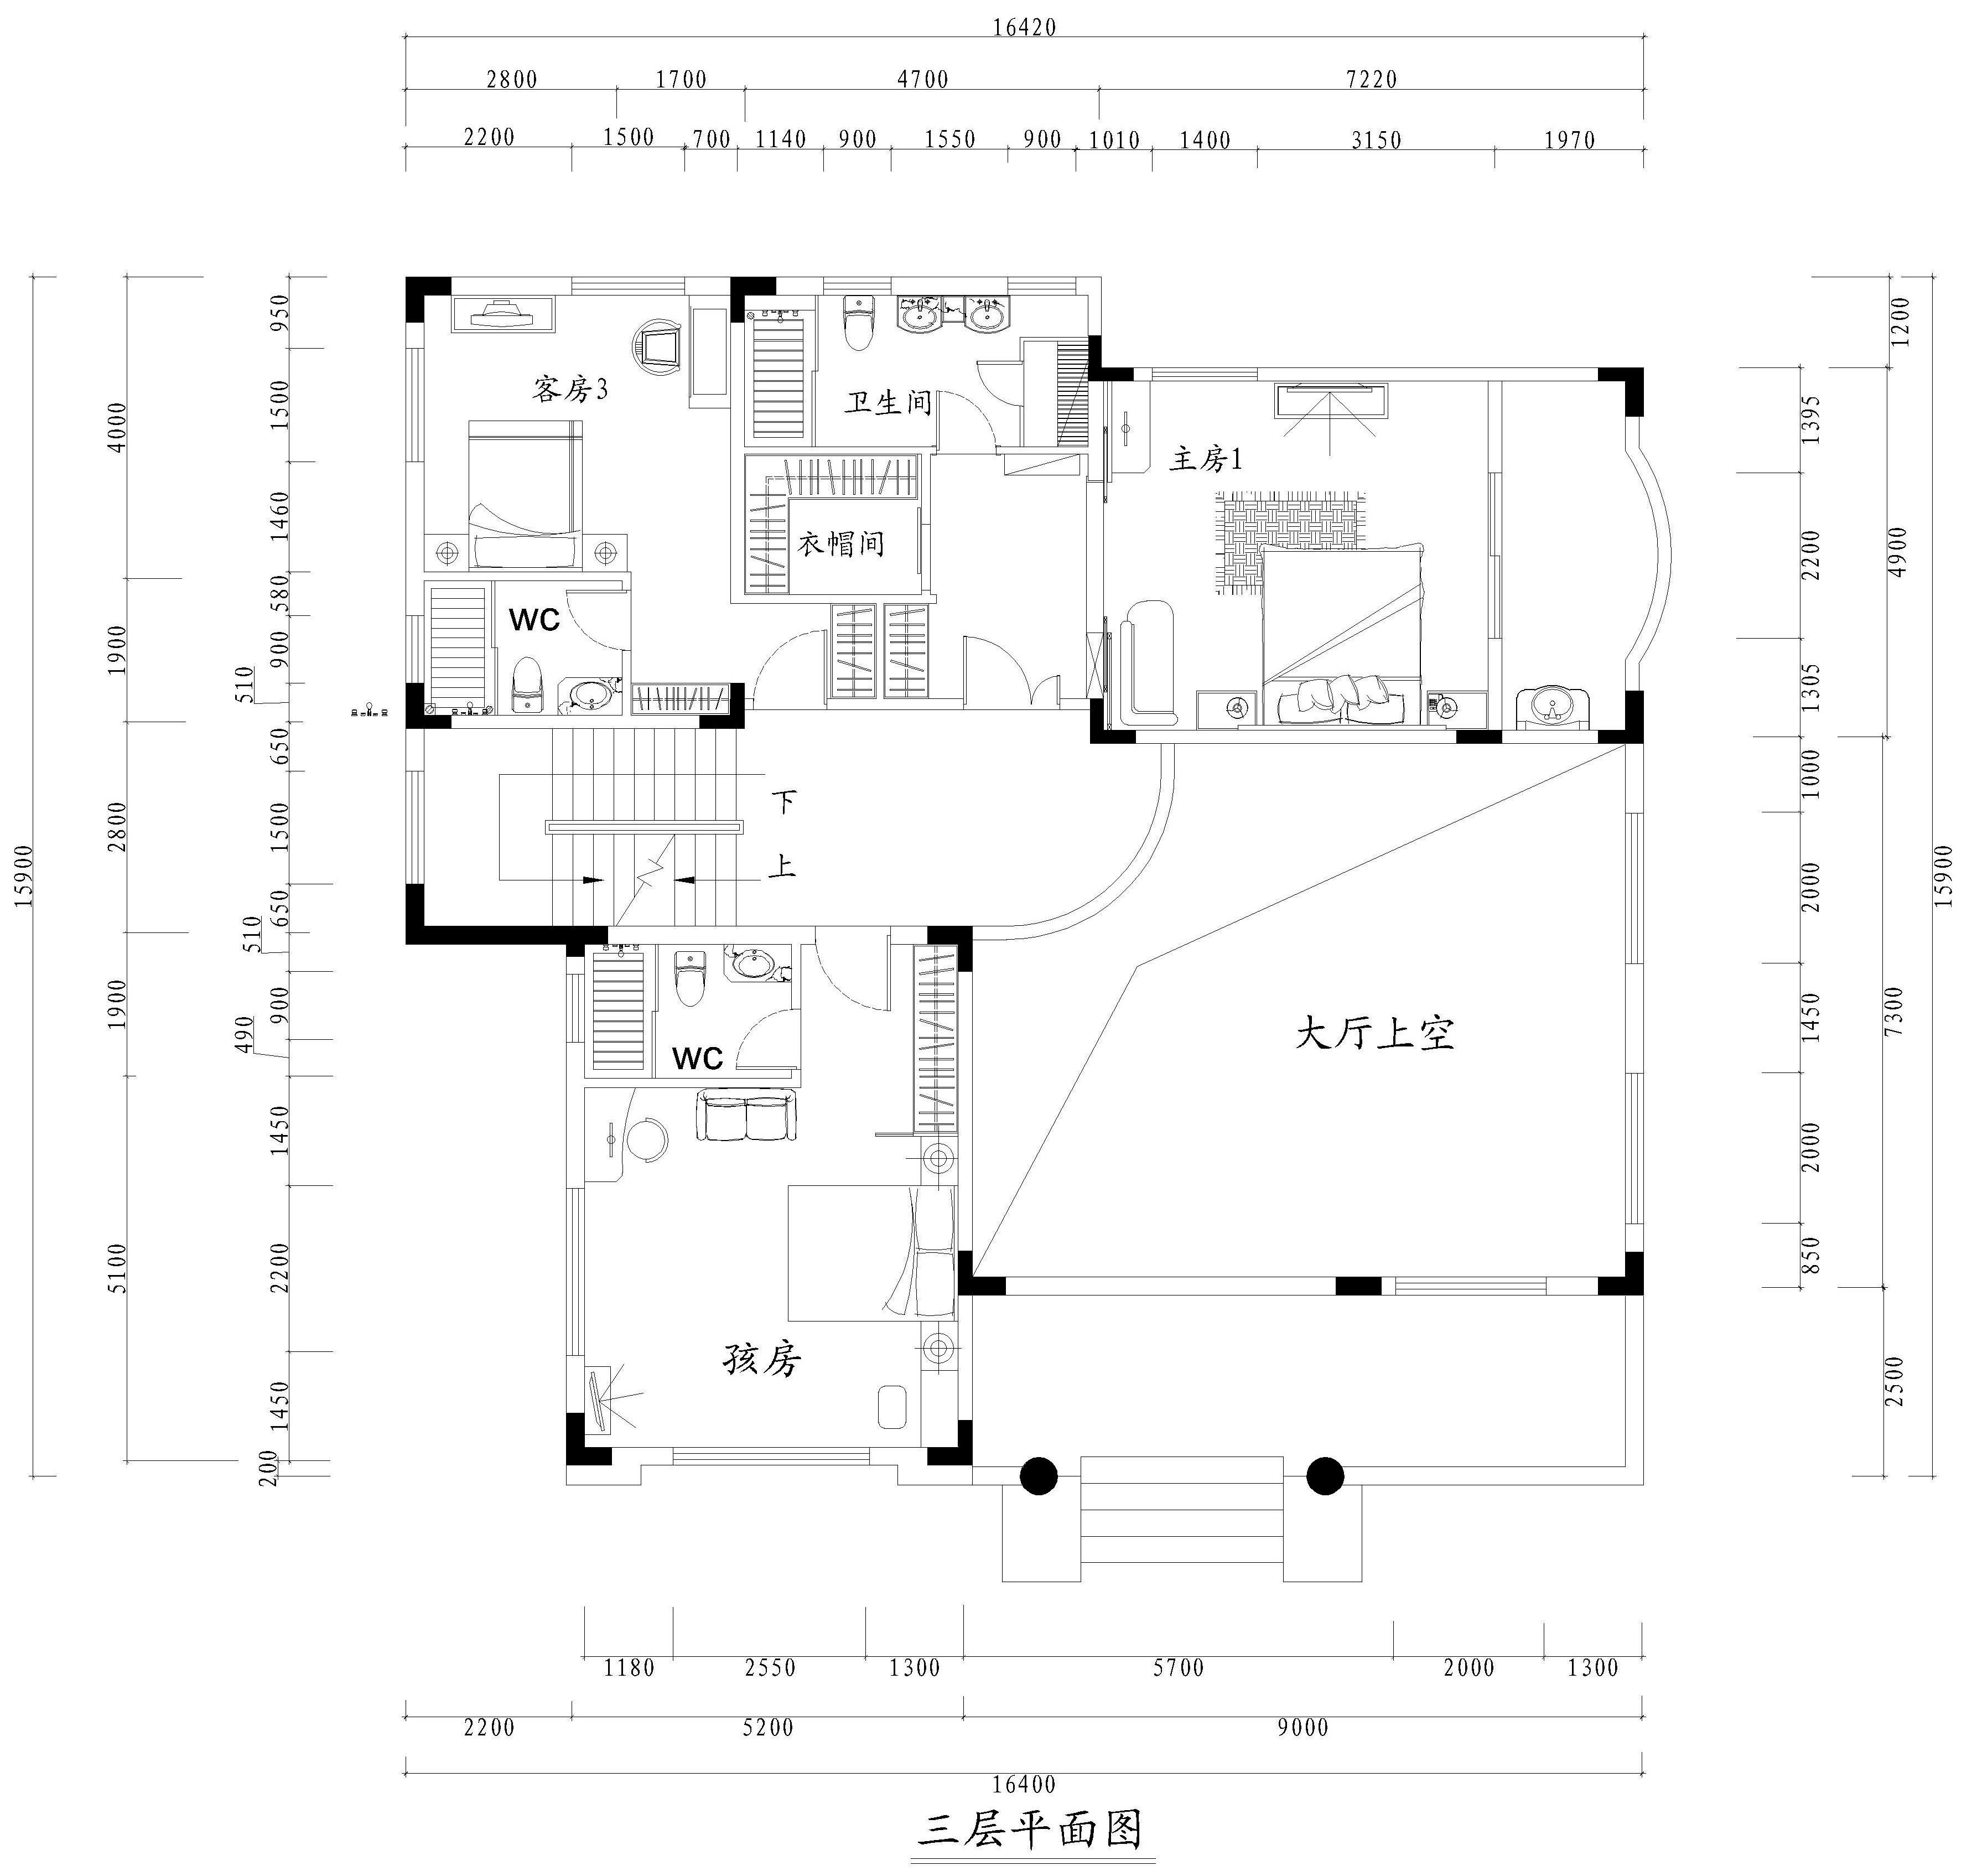 【东易日盛】1100㎡传统中式别墅装修设计效果图